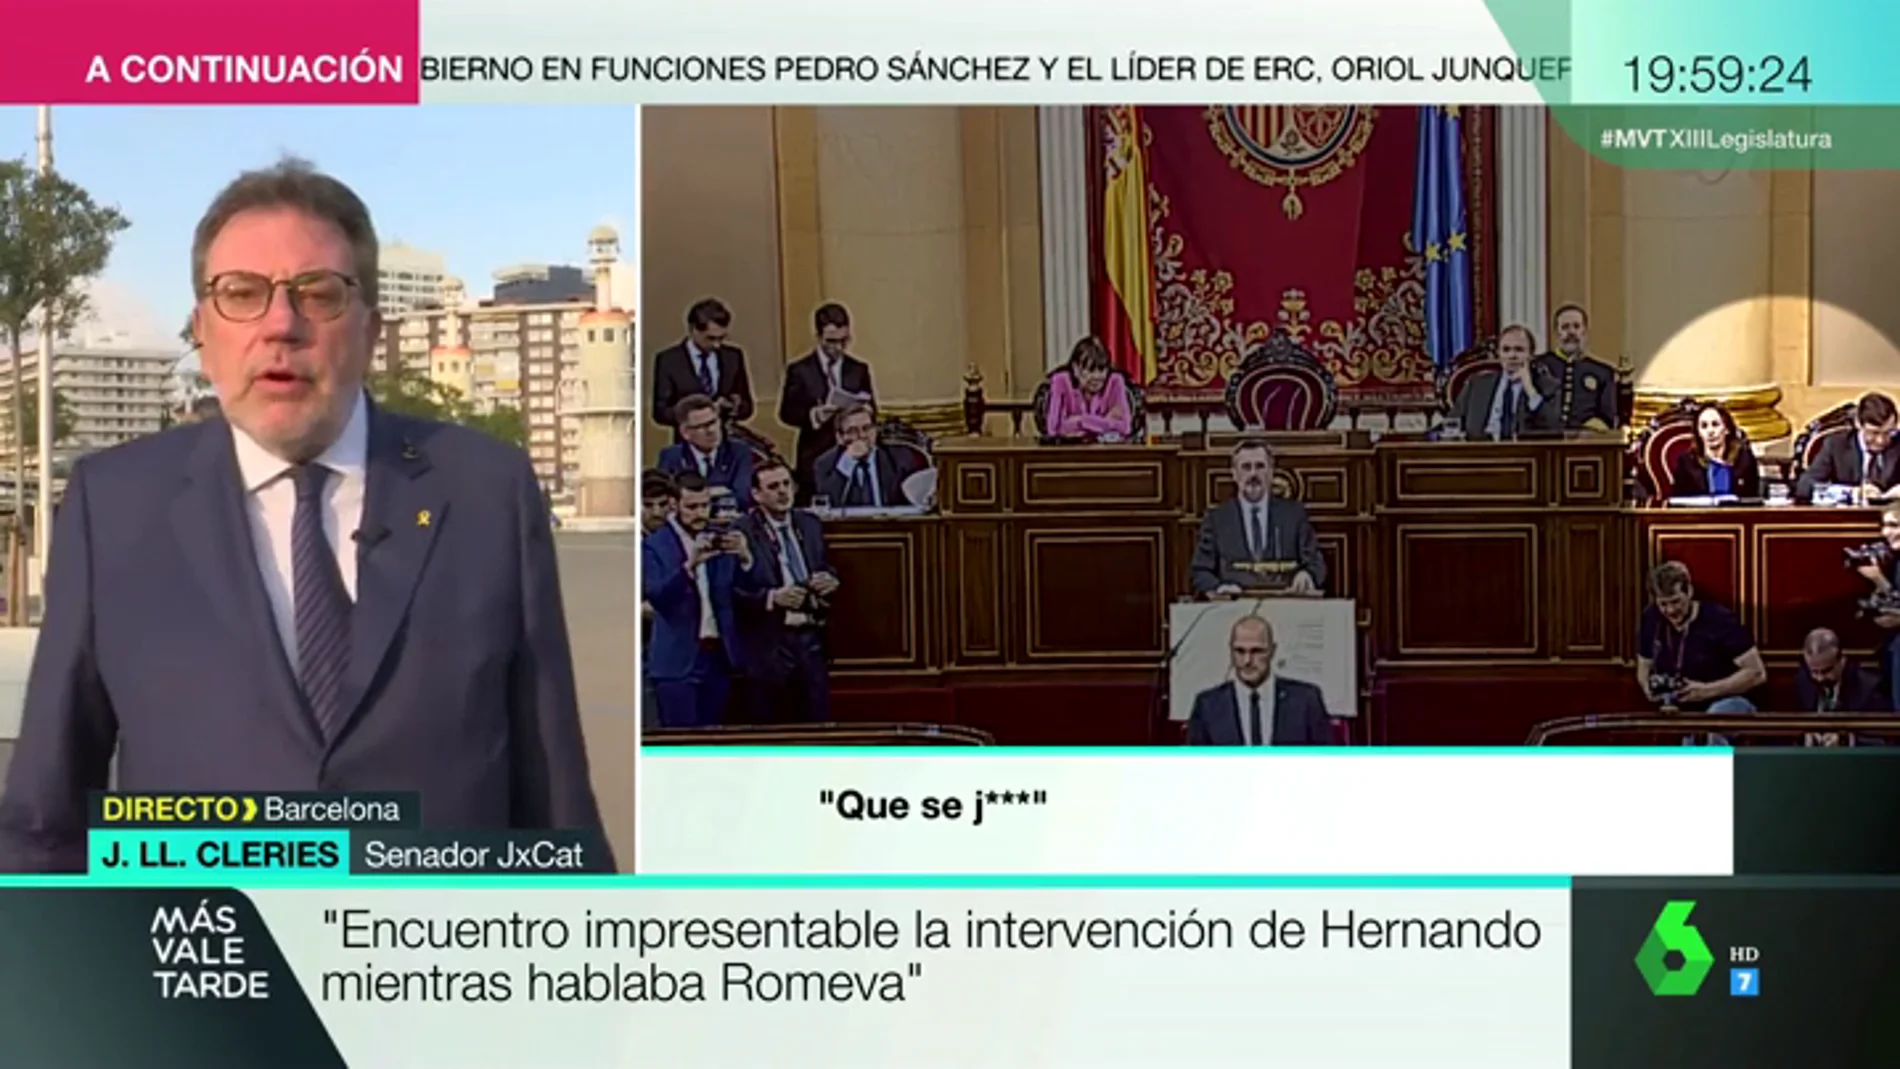 Josep Lluís Cleries (JxCat): "Rafael Hernando tiene poco respeto democrático utilizando su cargo para interrumpir a otro senador"